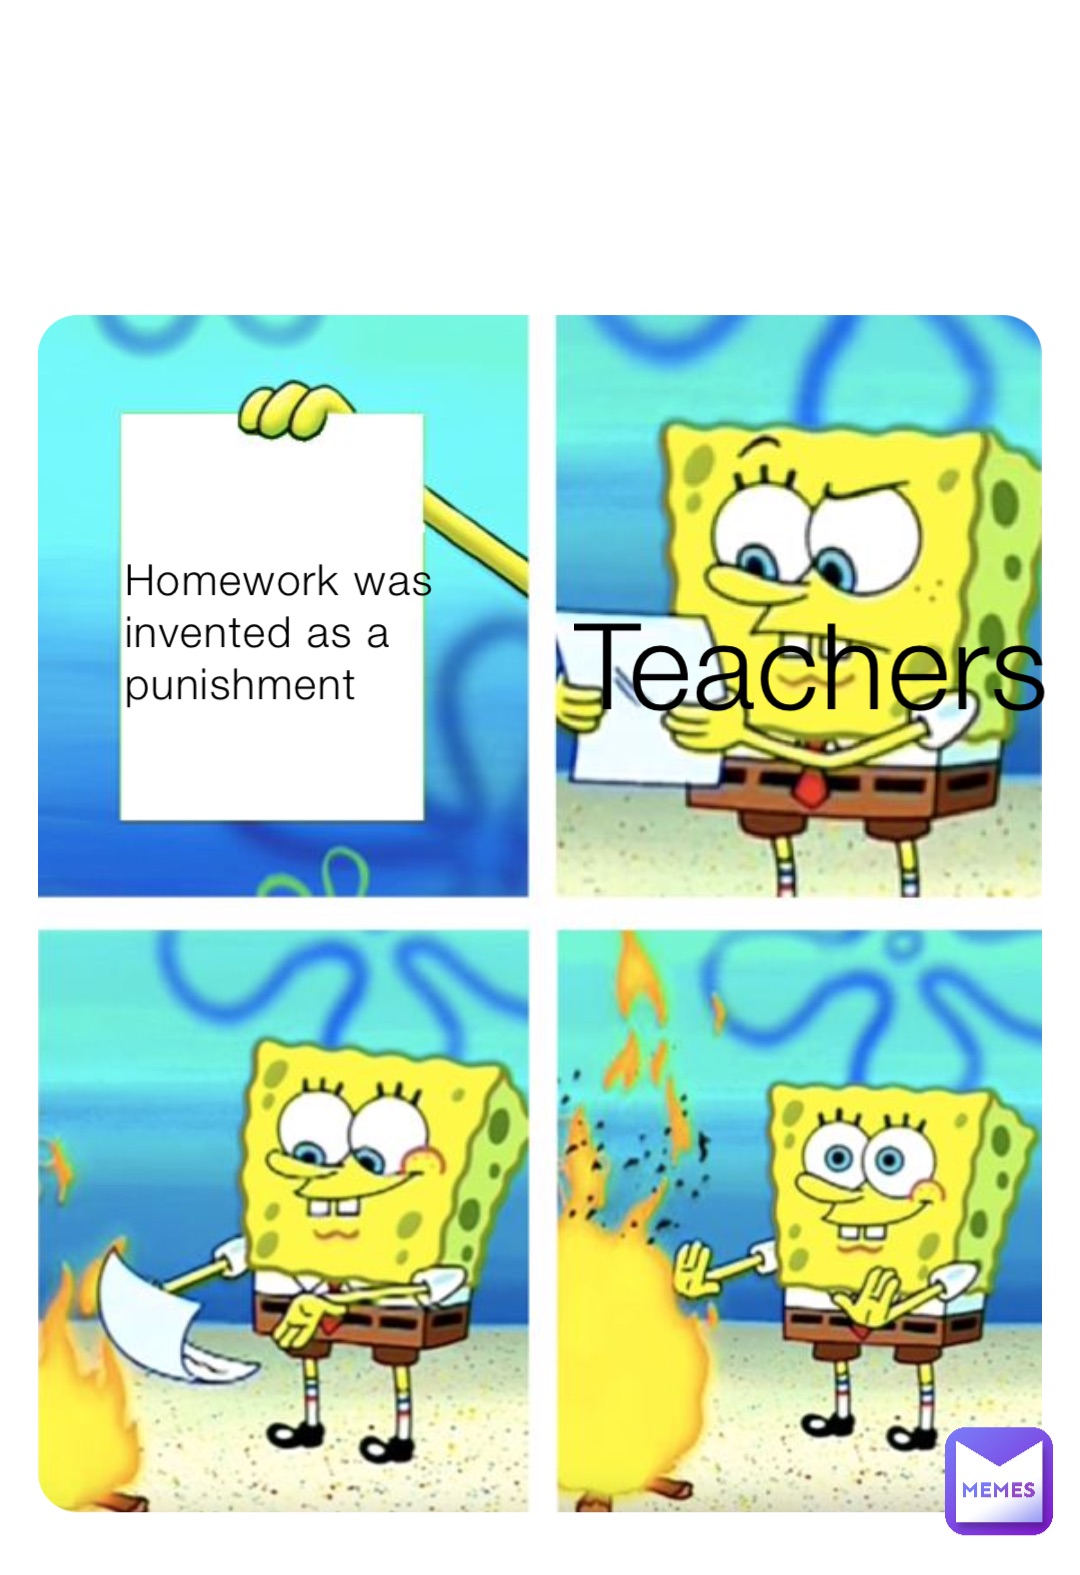 was homework made as punishment